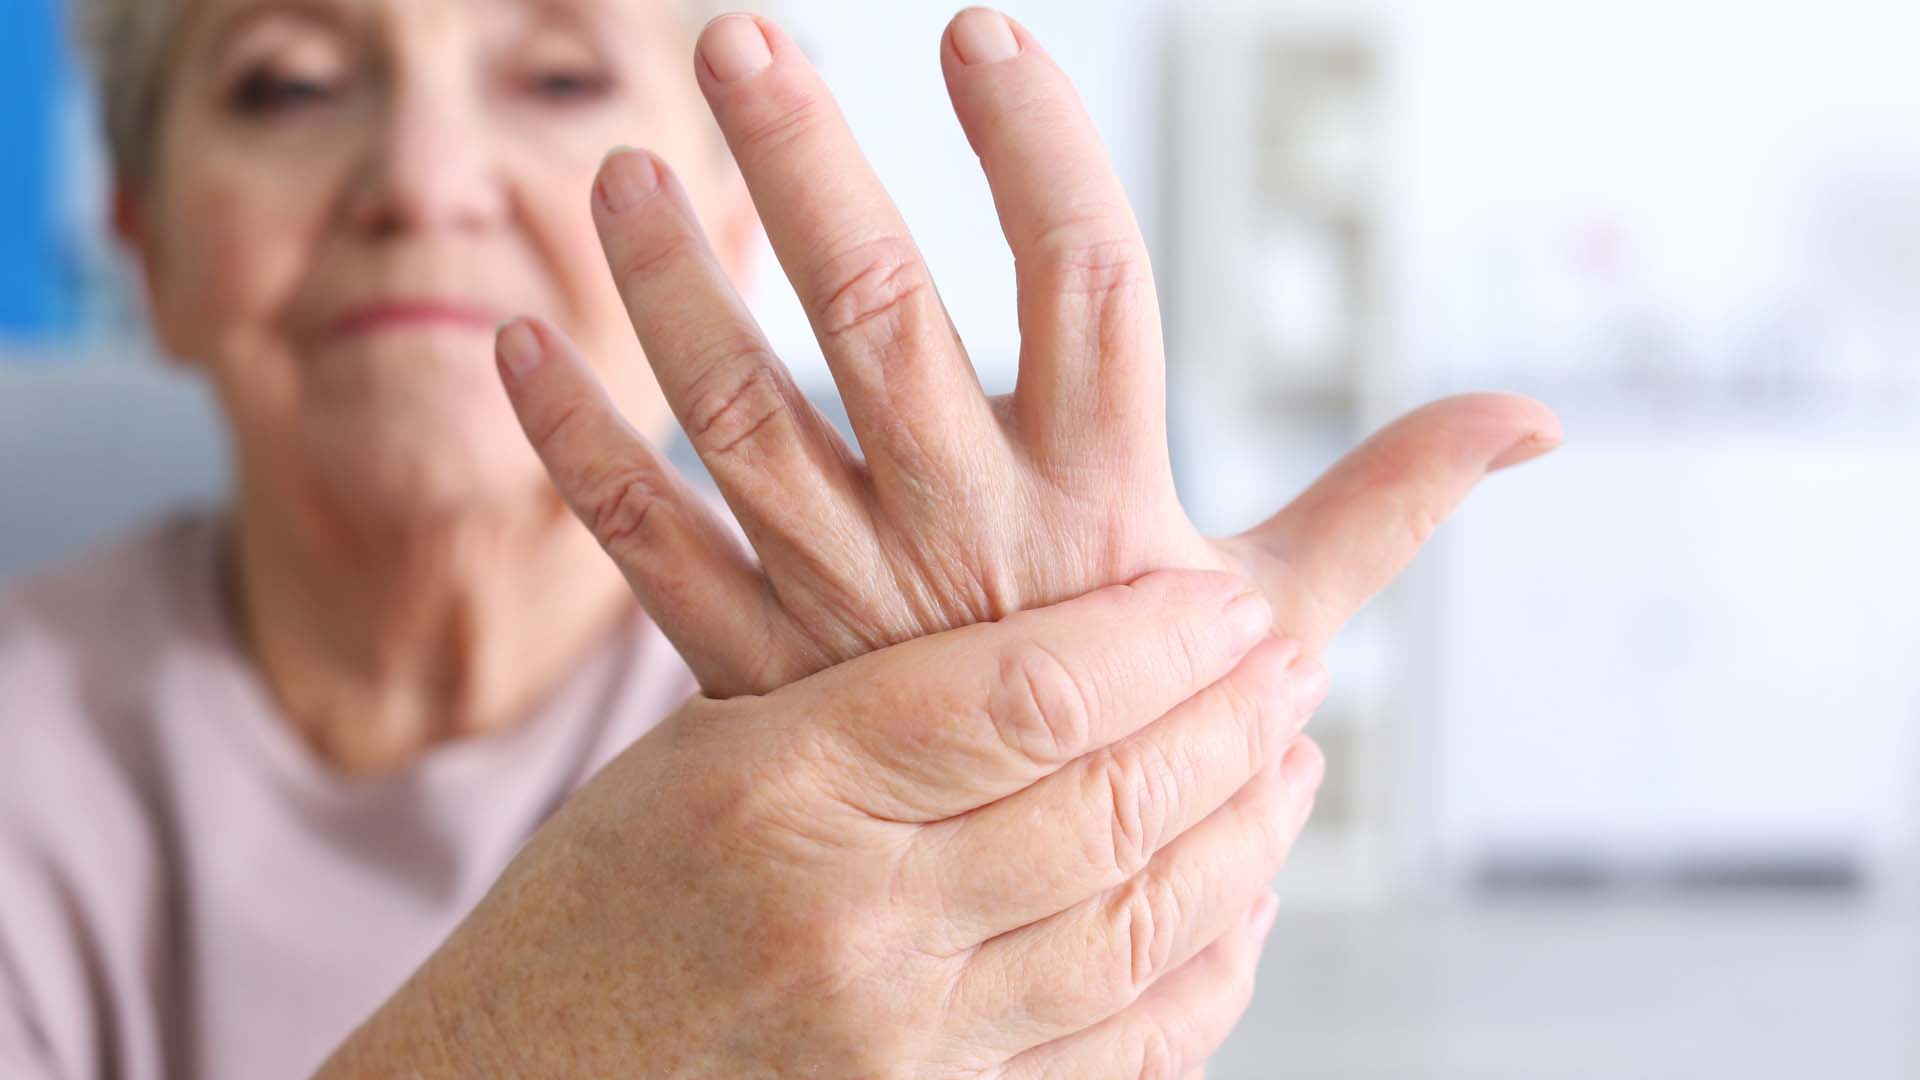 Afectiunile articulatiilor: Artrite si artroze Artrita artroza articulațiilor